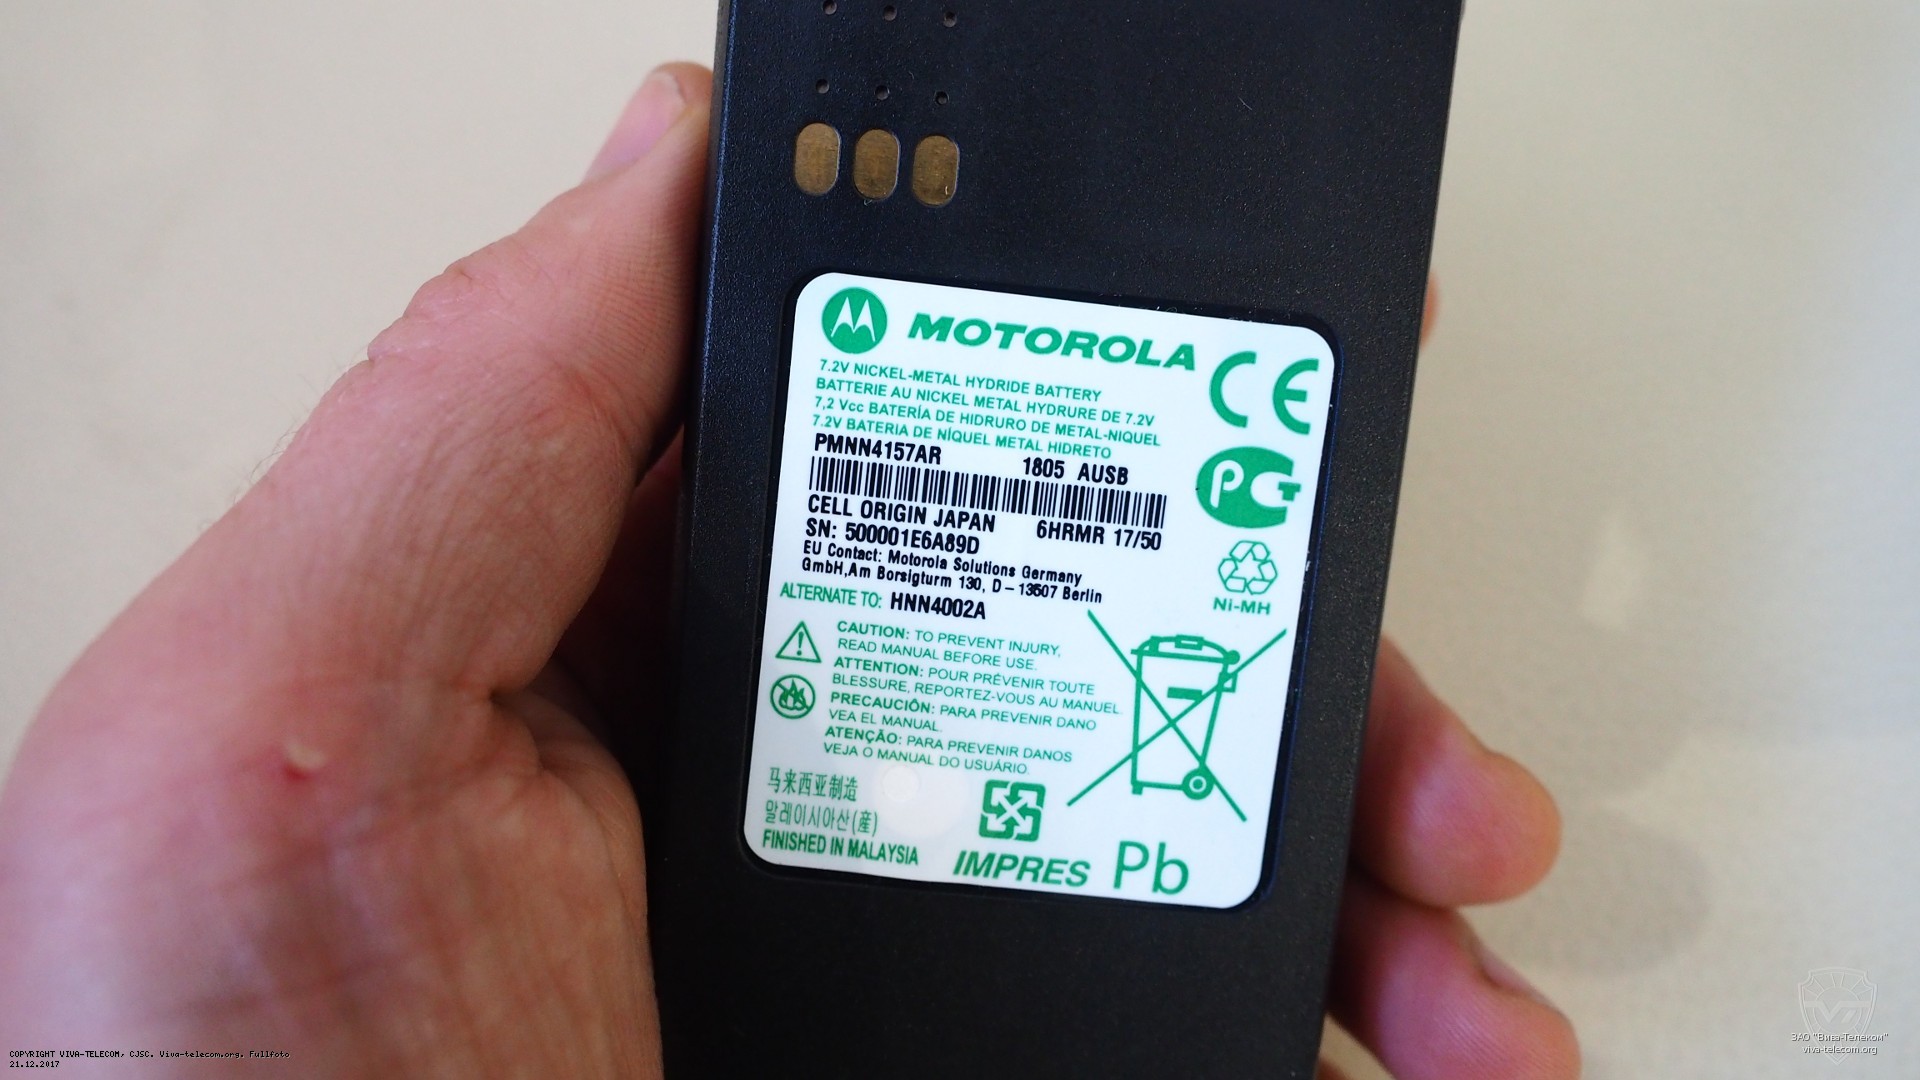    Motorola PMNN4157AR